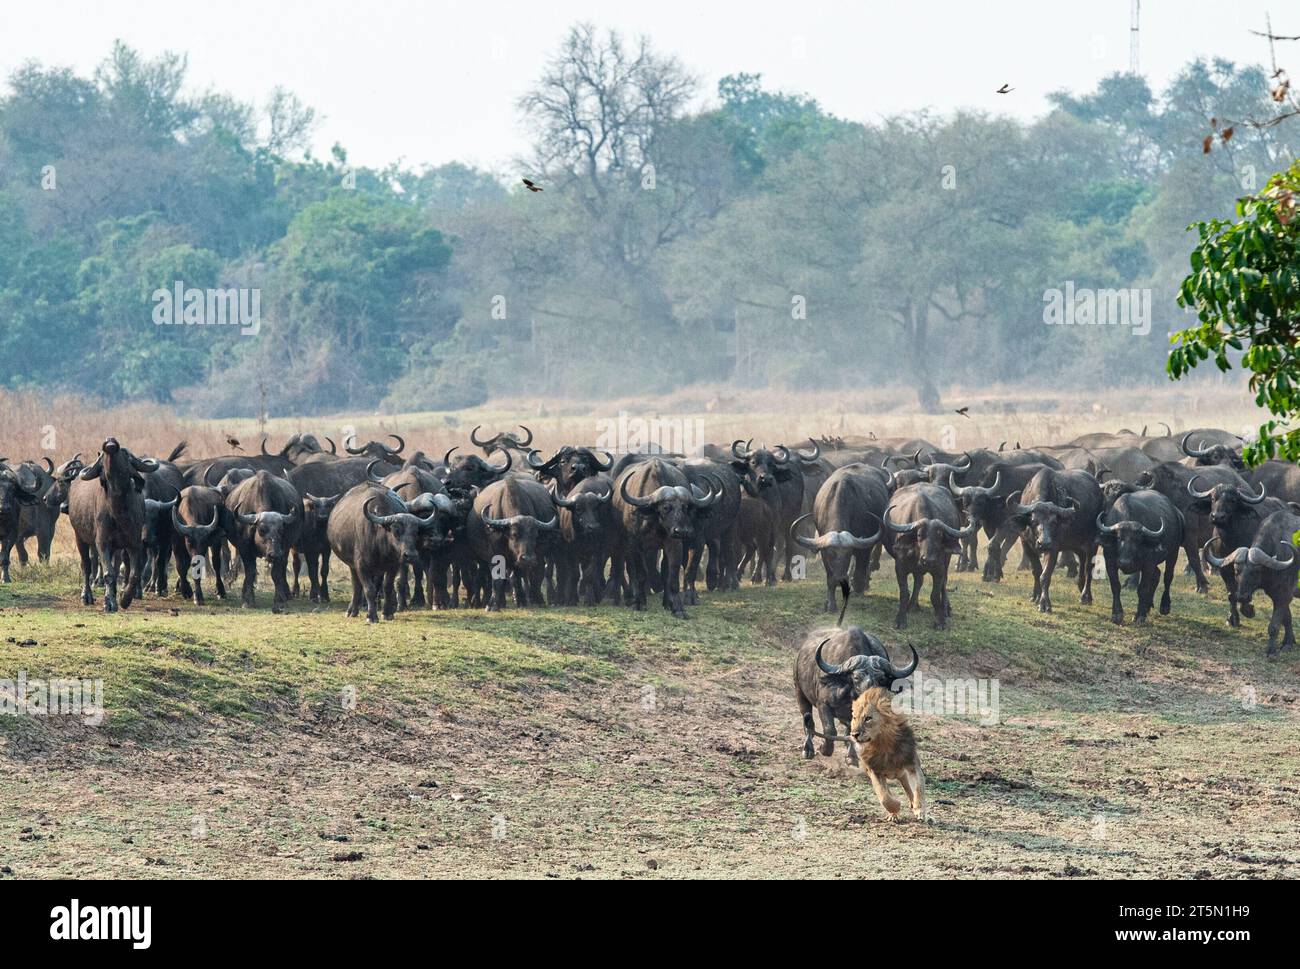 Büffel jagen den Löwen nach AFRIKA AUFREGENDE Bilder fangen den Moment ein, in dem eine Büffelherde den Tisch auf einen Stolz der Löwen, der prid, dramatisch drehte Stockfoto